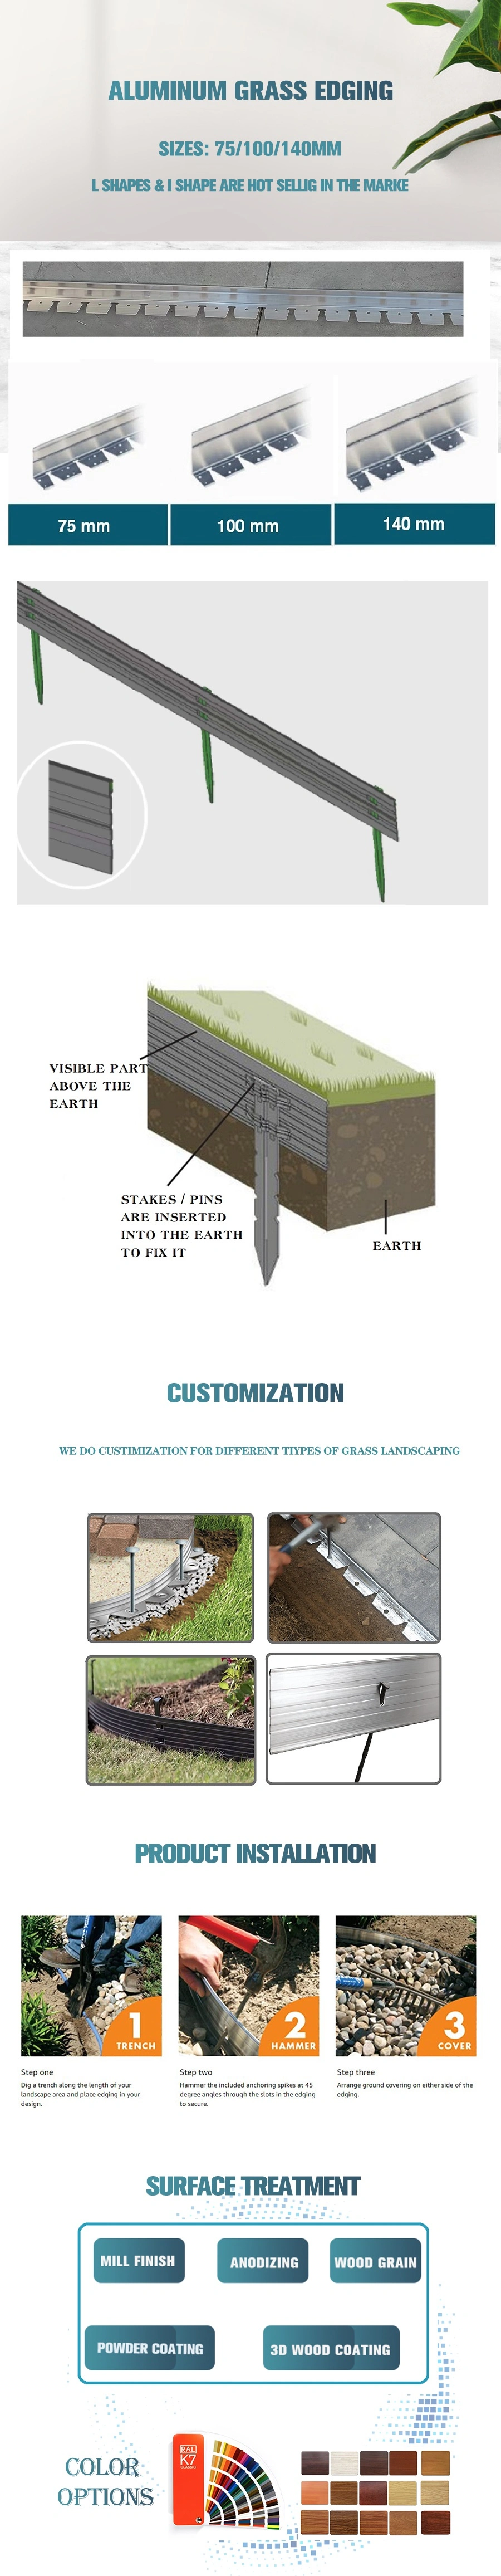 Structure Brick Edging Made of Aluminum Alloy, Aluminum Landscape Edging DIY Garden